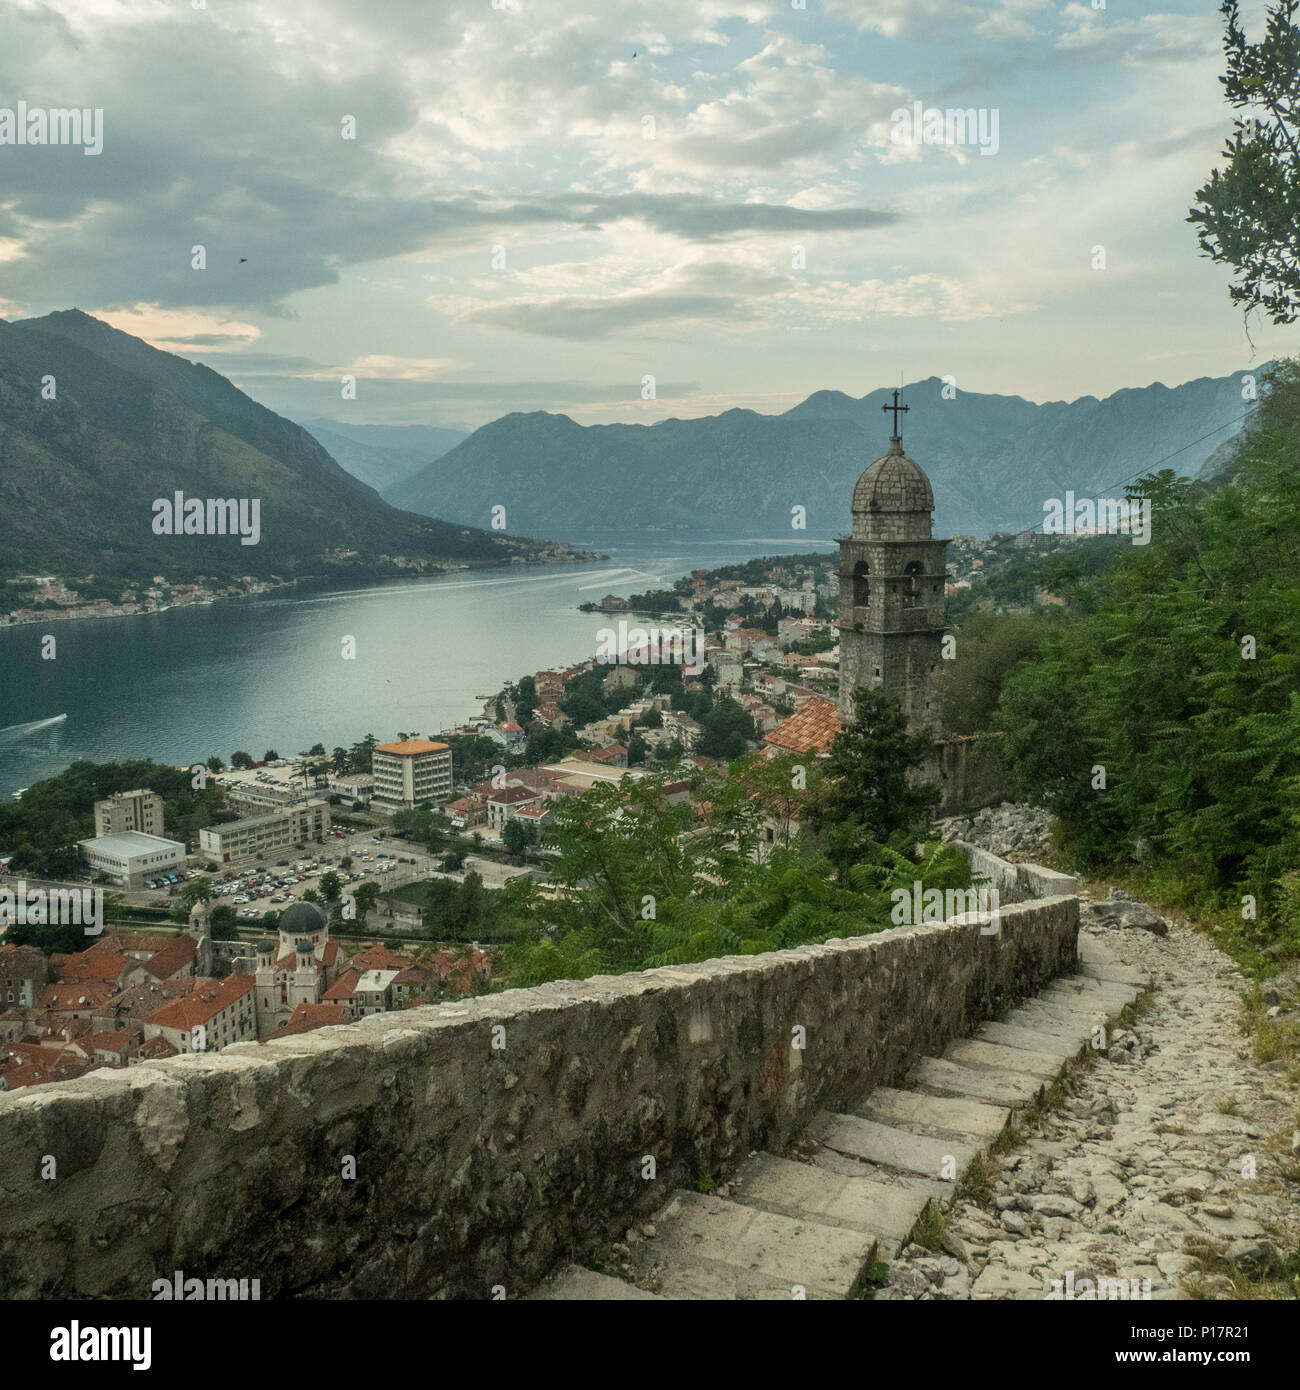 La città fortificata di Kotor in una baia in Montenegro lungo il mare adriatico. Foto Stock